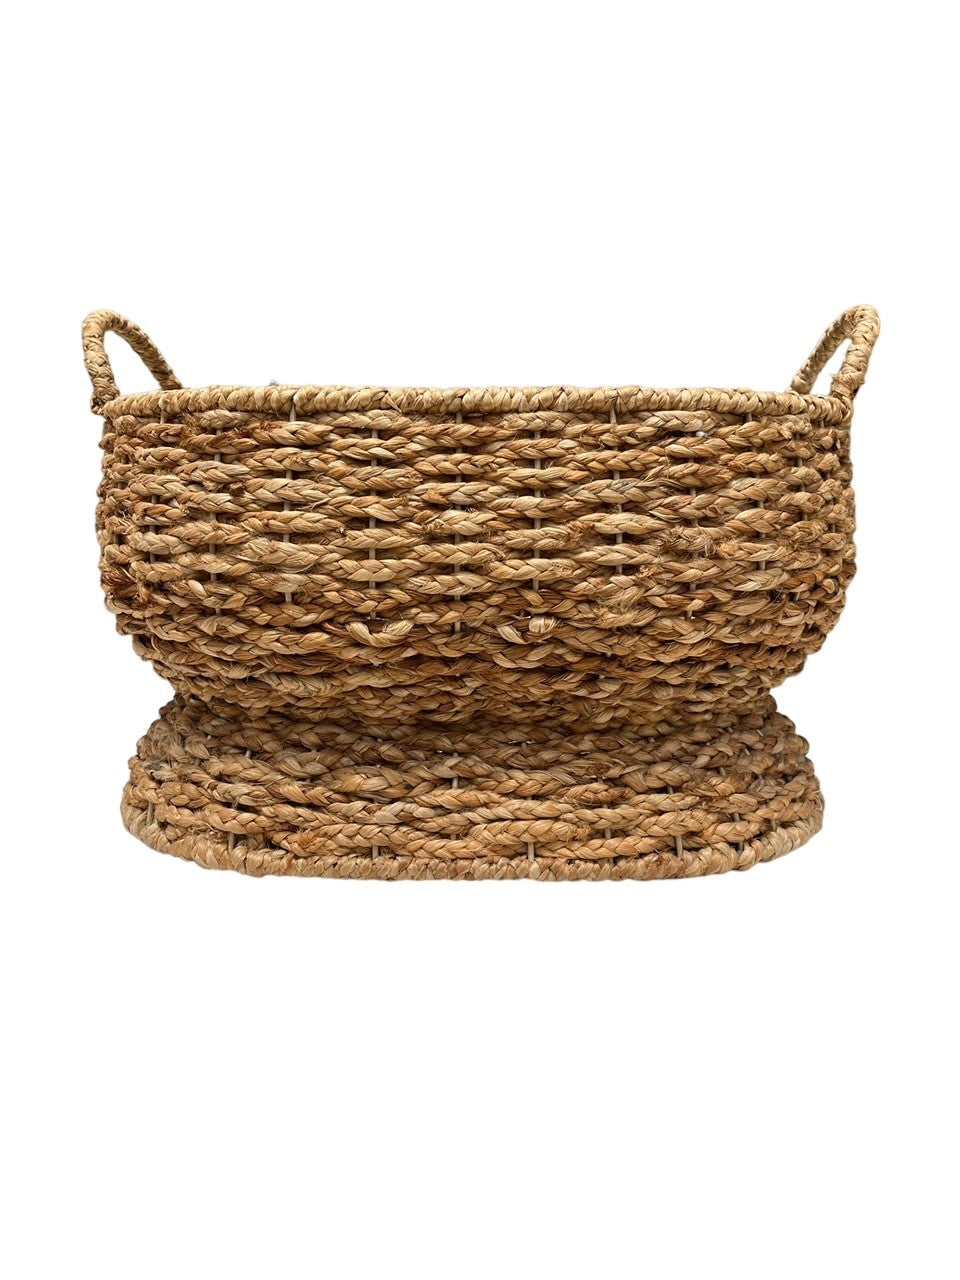 Sweater Weave Footbath Basket Front 